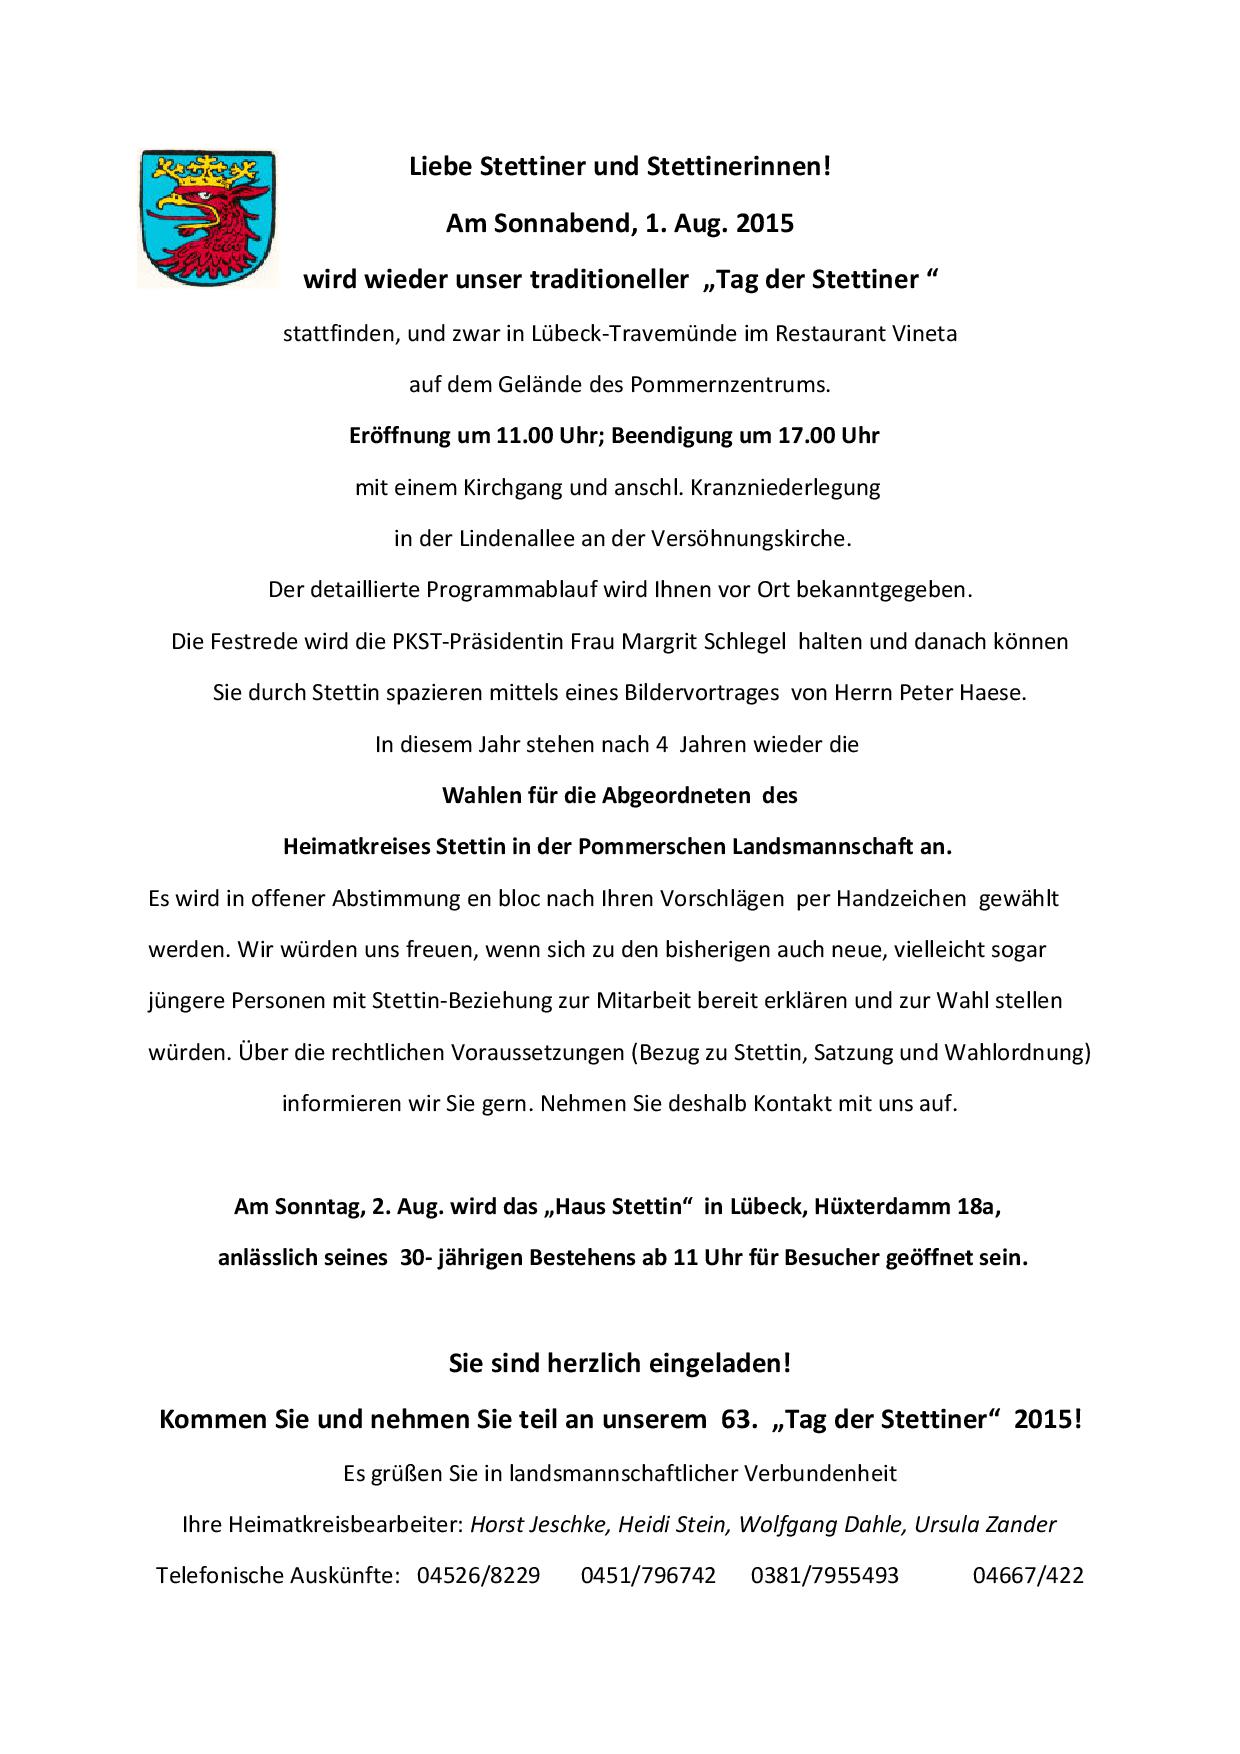 Einladung zum 63. Tag der Stettiner in Travemünde am 1.8.2015